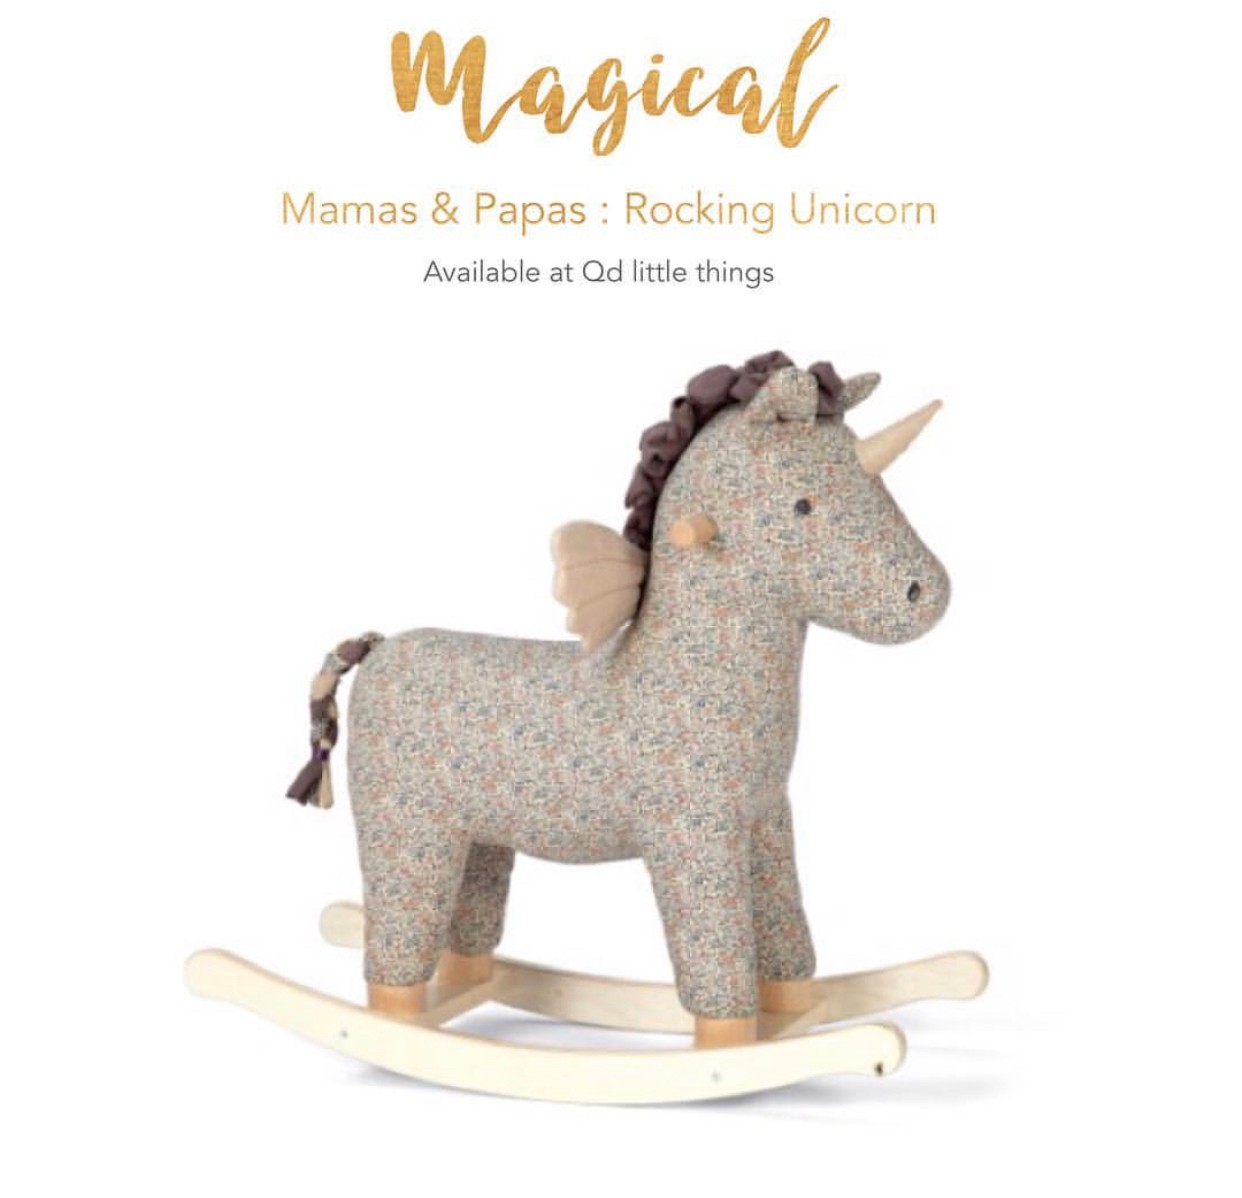 Mamas & Papas - Rocking Unicorn